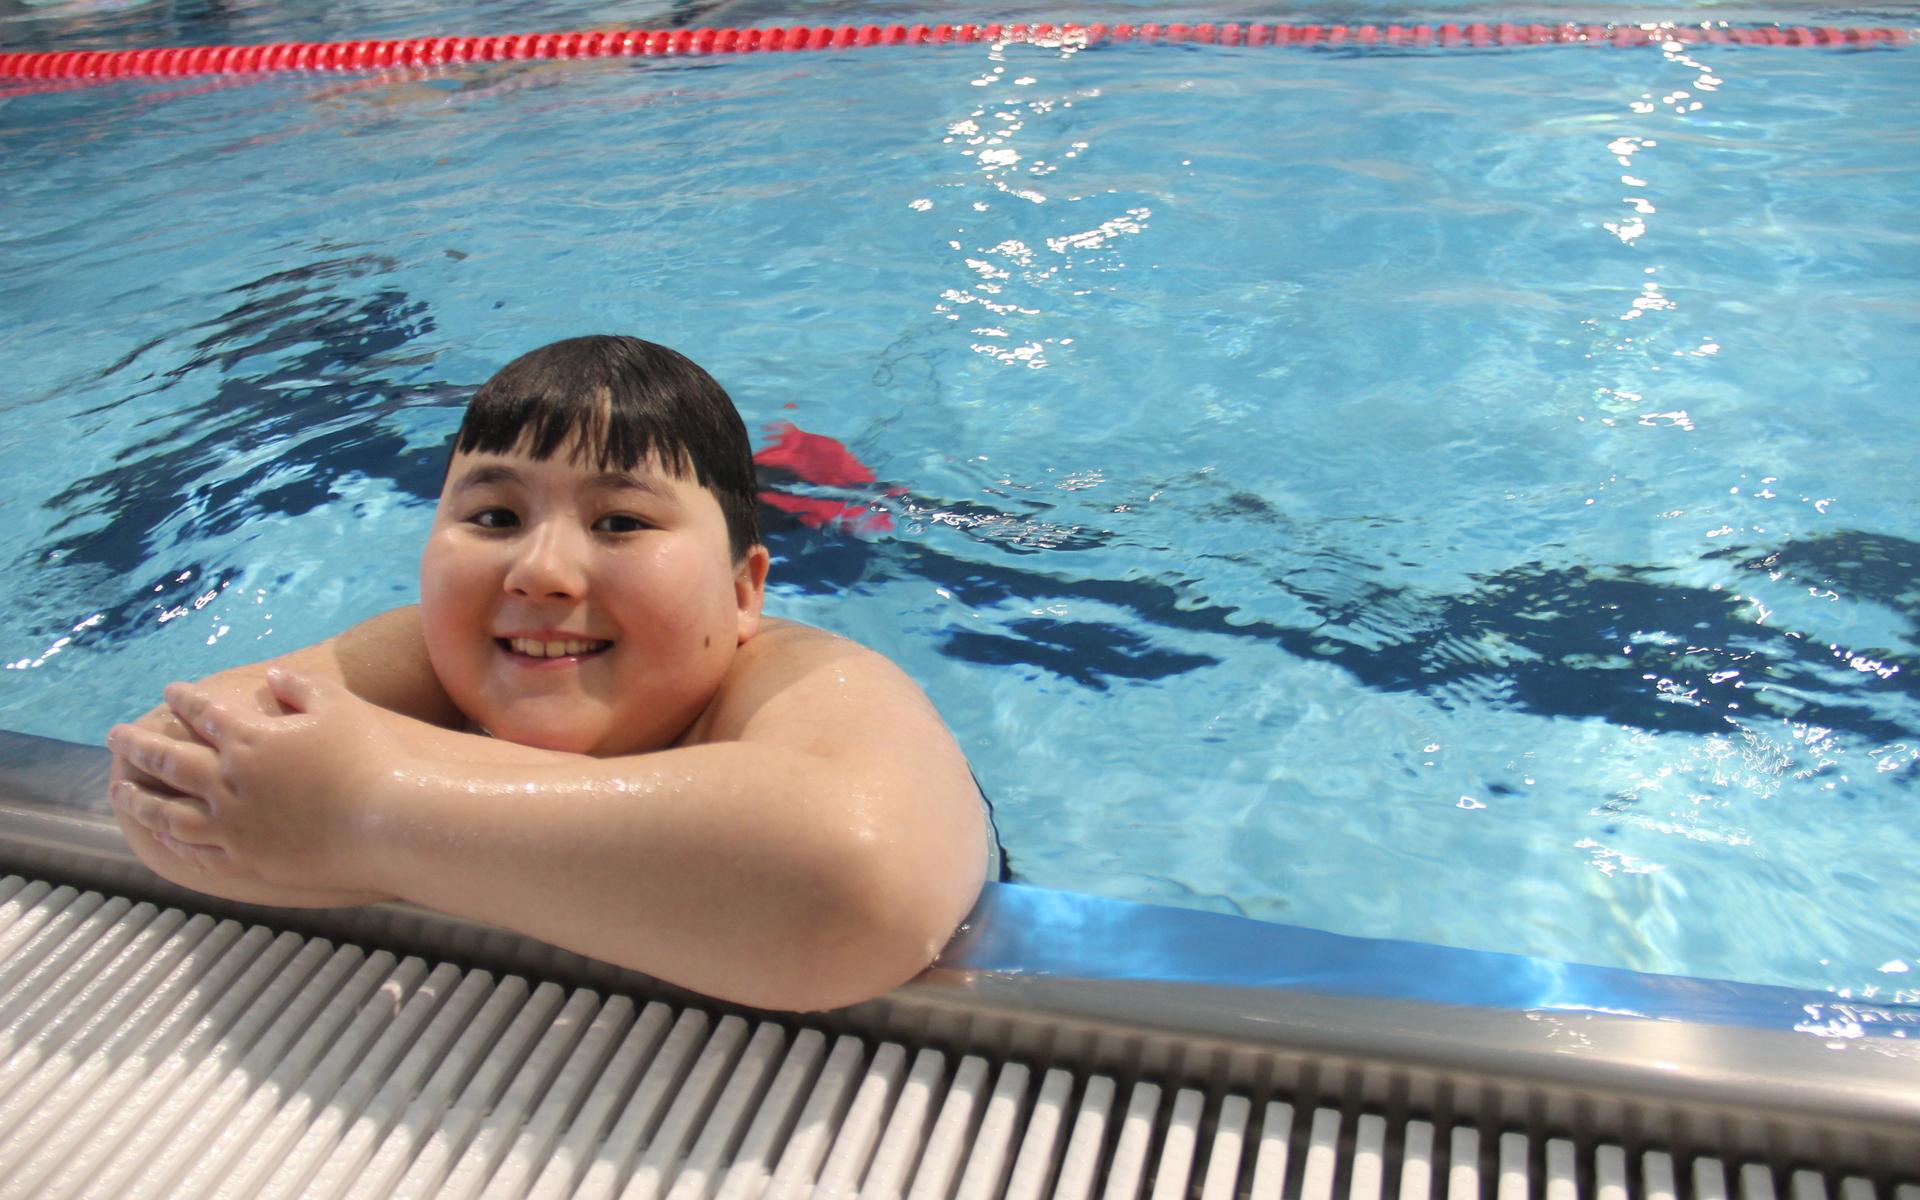 Tio år gamla Samuel Johansson från Åby tog inte mindre än fem (!) simmärken i dag.